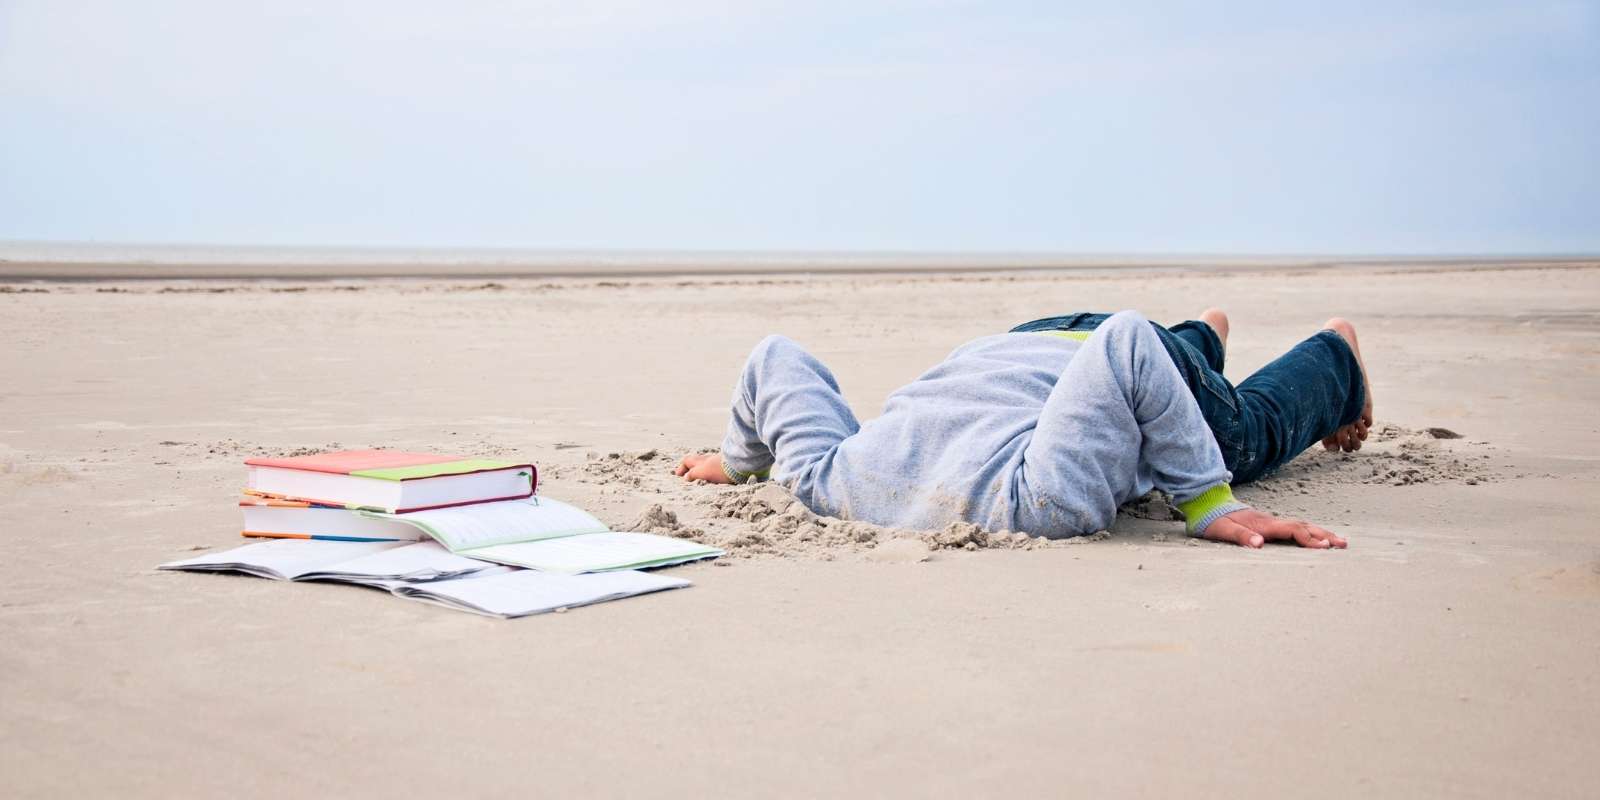 More prepared. Книга на песке. Человек прячет голову в песок. Три зарытых в песок человека. Head in Sand.